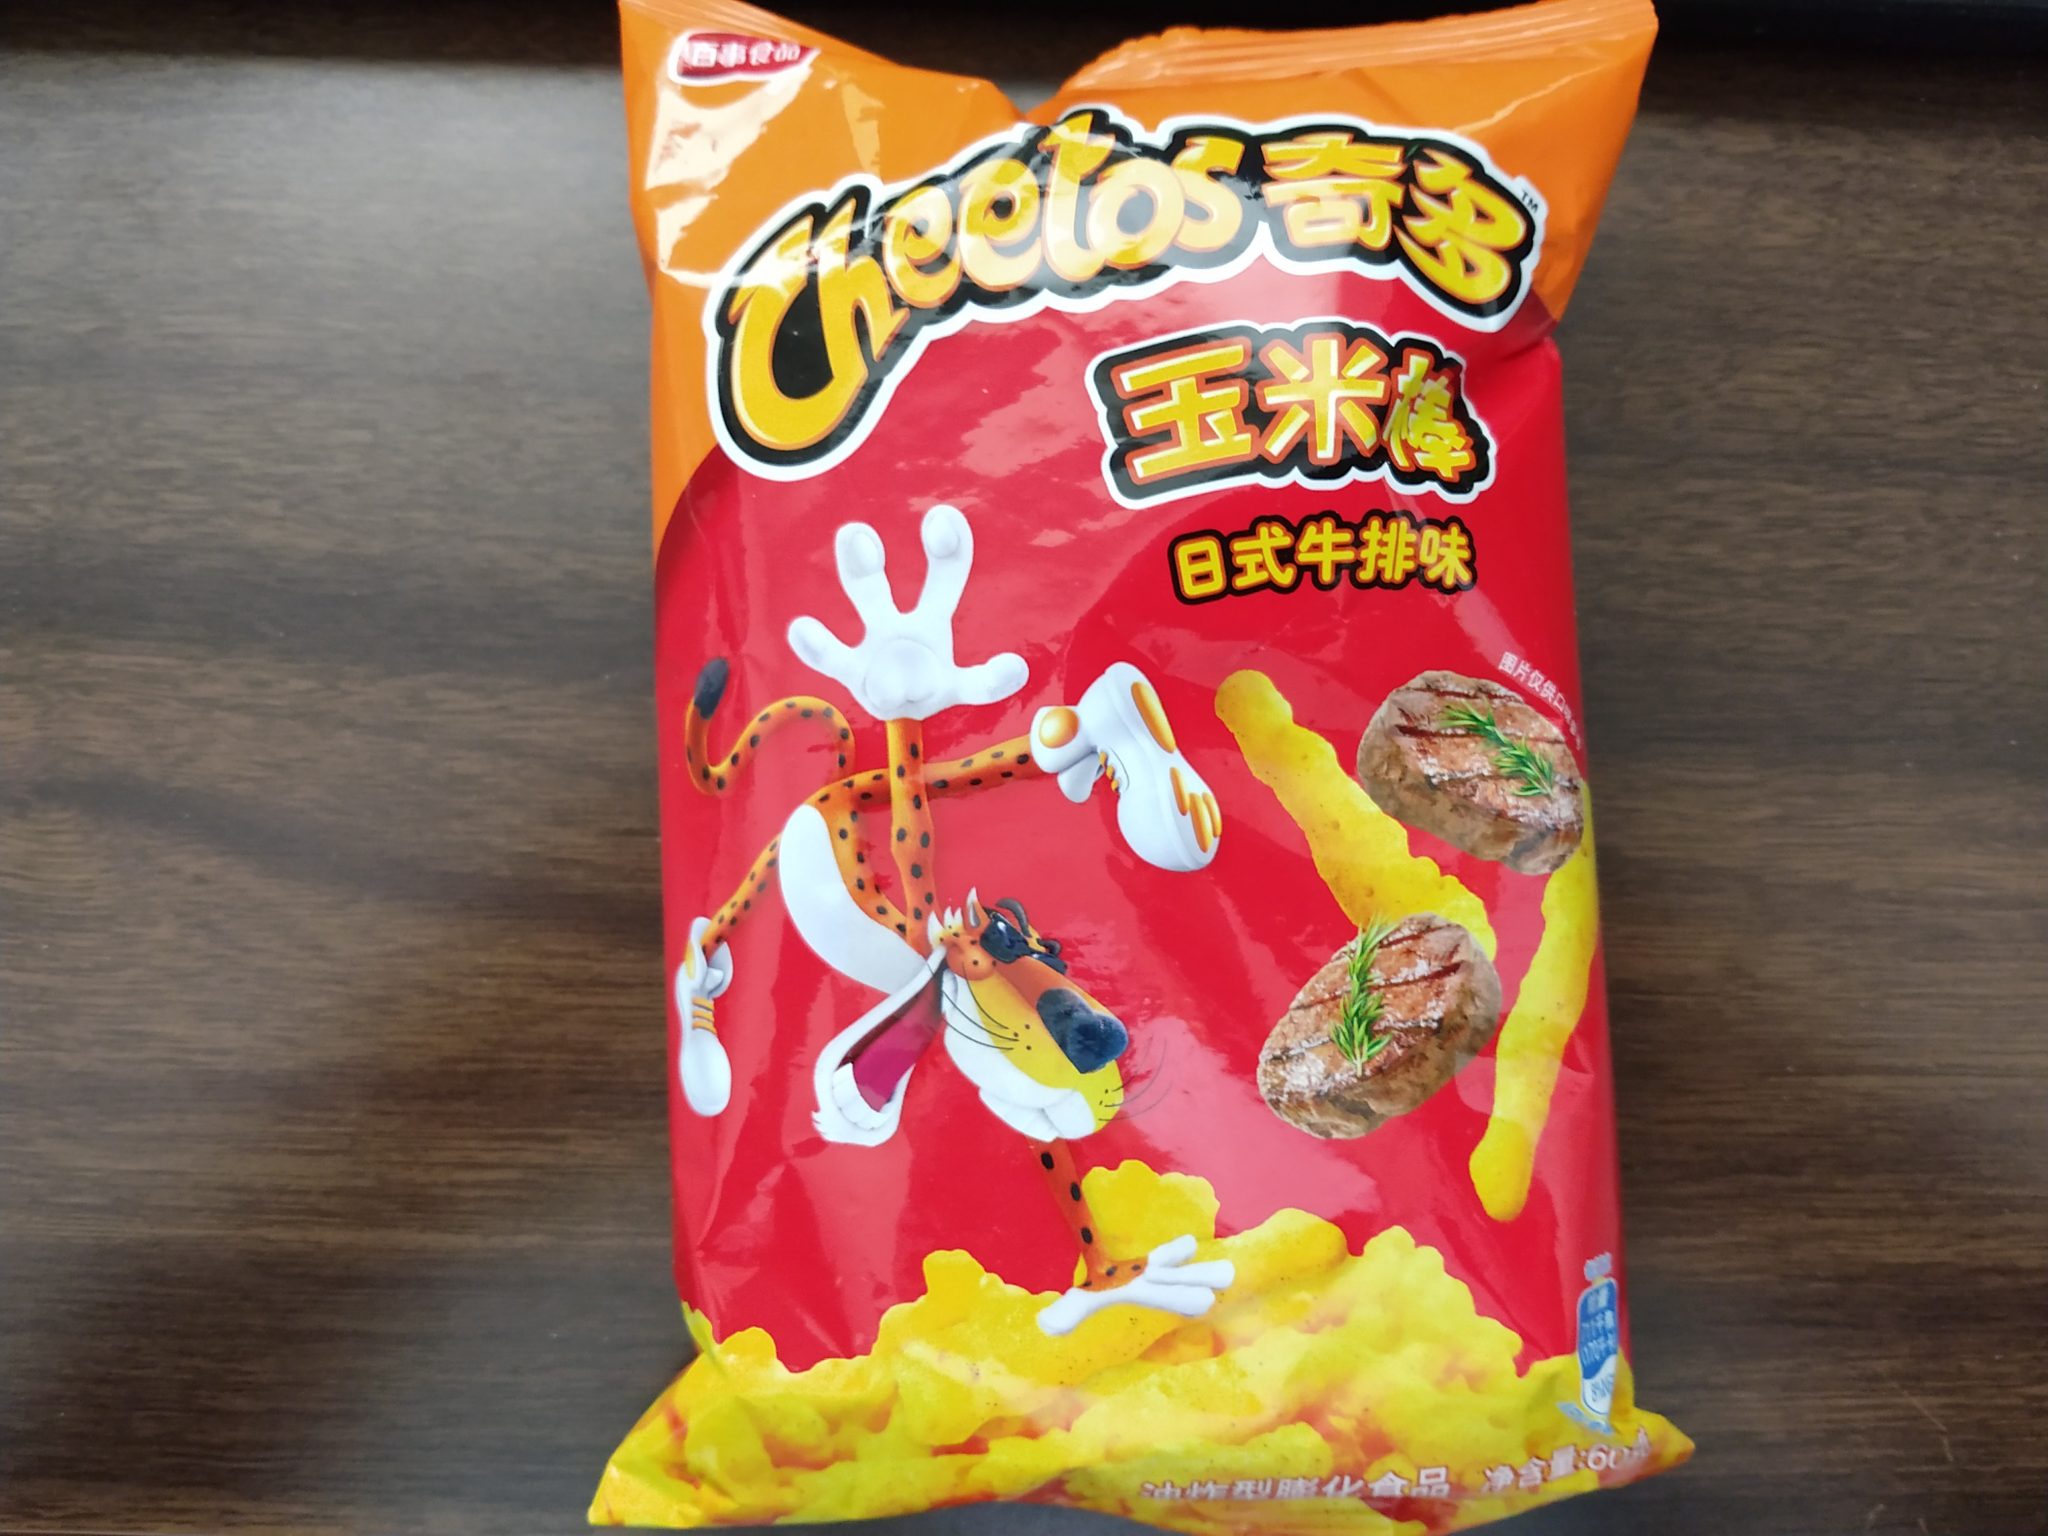 Cheetos – Japanese Steak Flavor